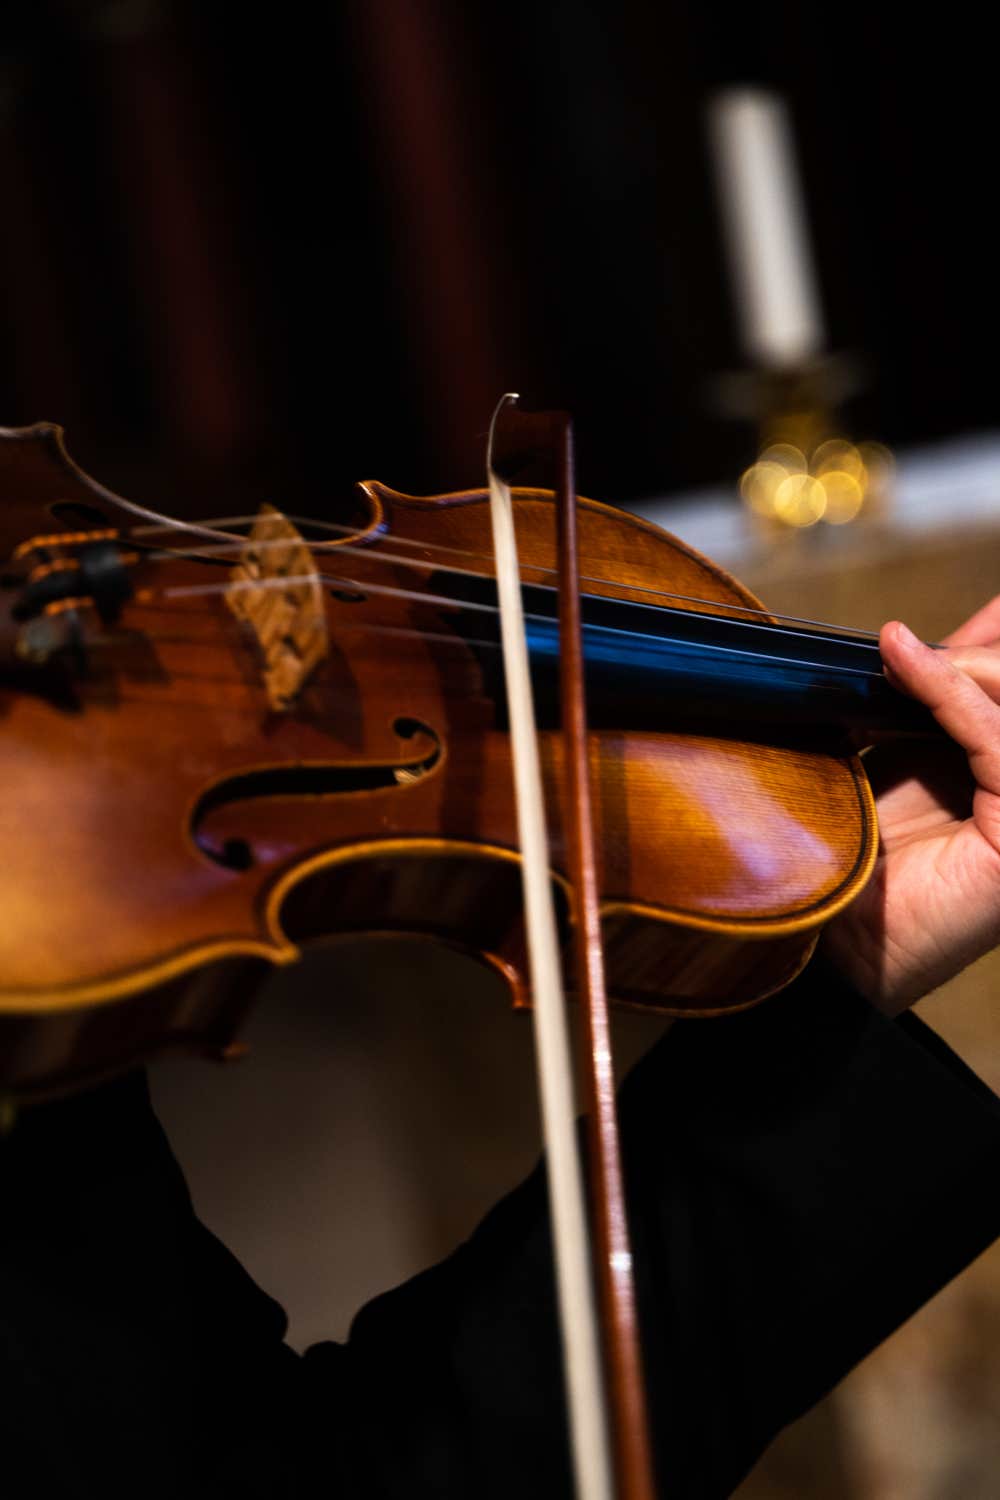 Les 4 Saisons de Vivaldi Intégrale / Petite Musique de Nuit de Mozart-Eglise Saint Germain des Prés